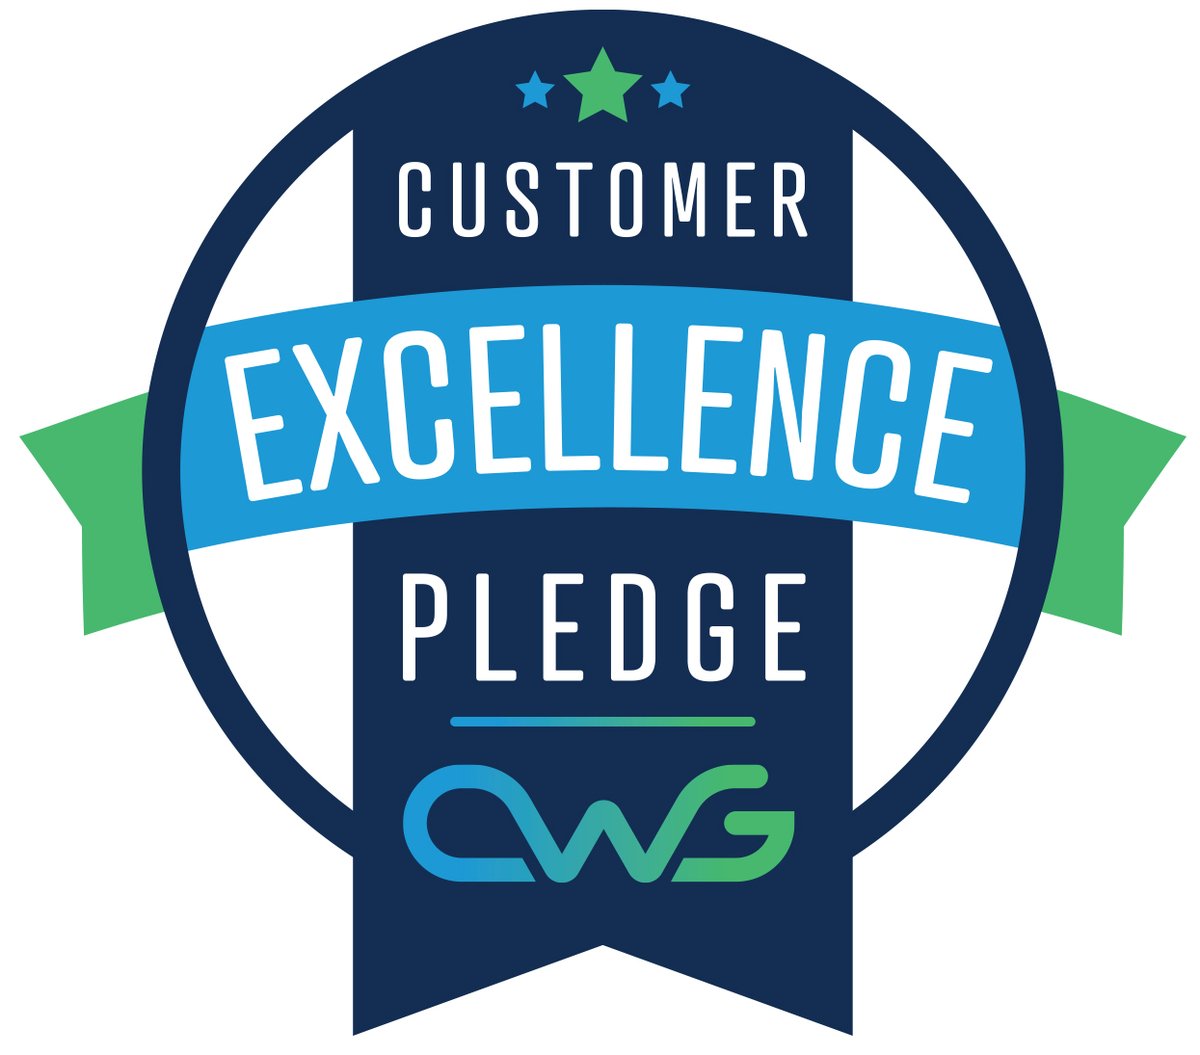 El logo de excelencia del cliente